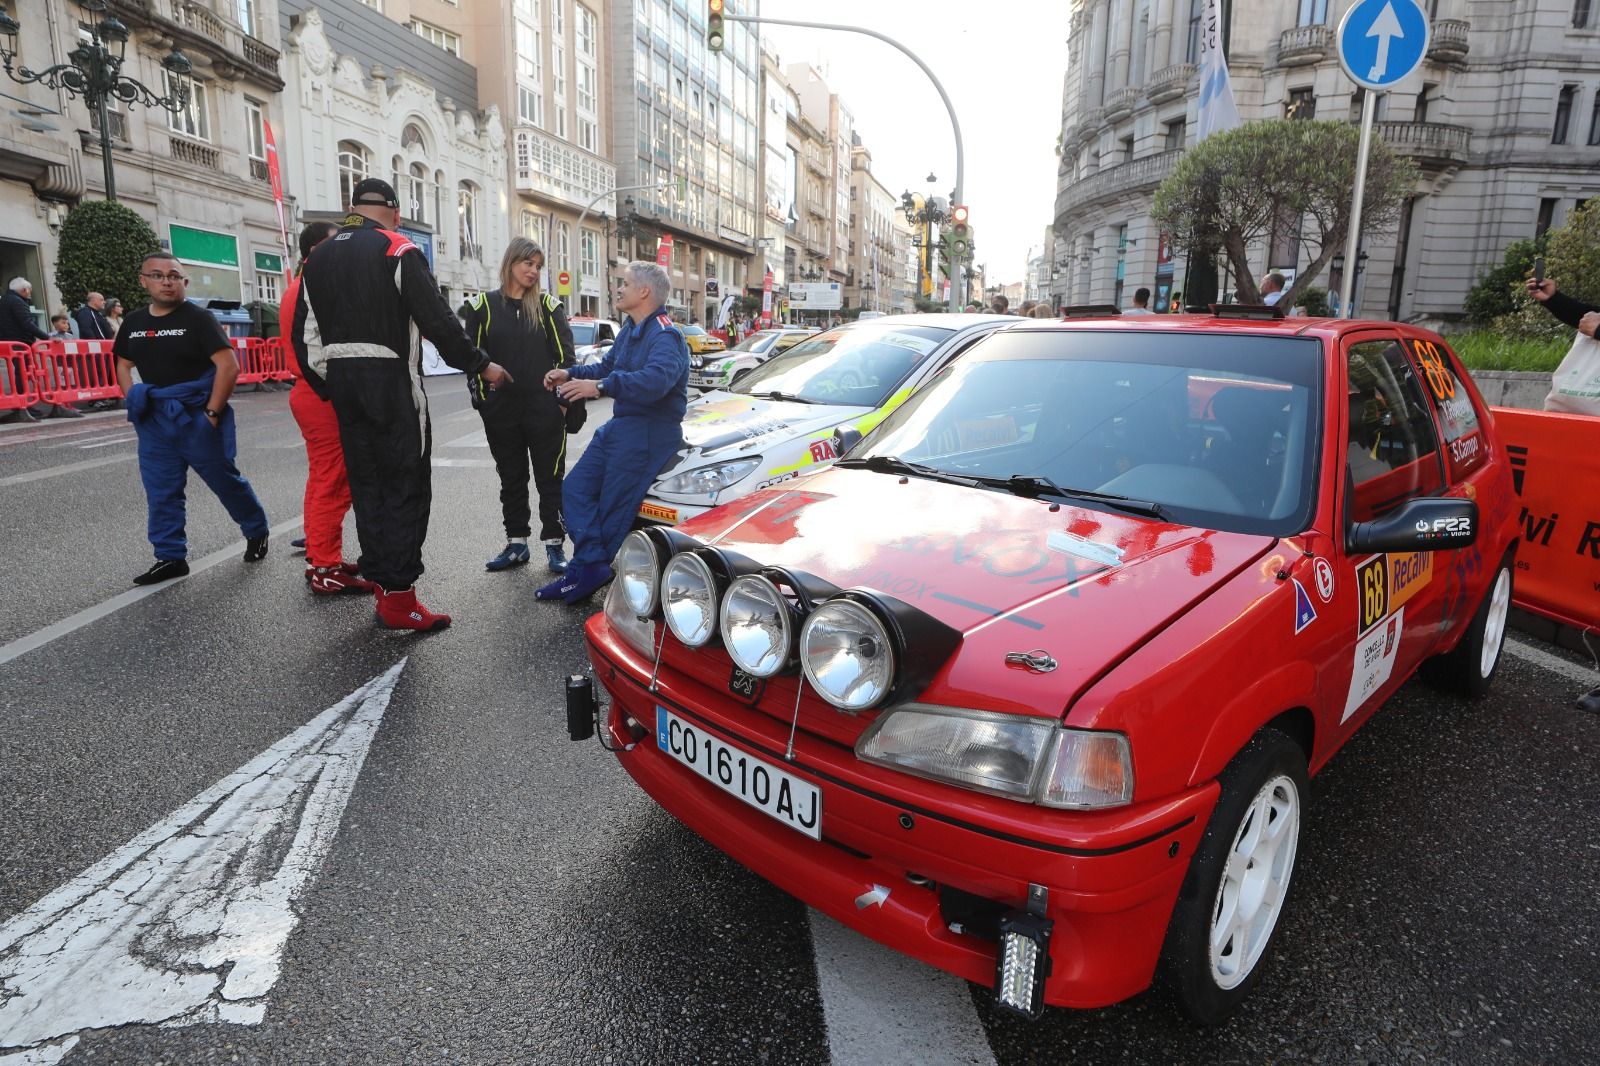 Los motores del Rallye Rías Baixas rugen en el centro de Vigo